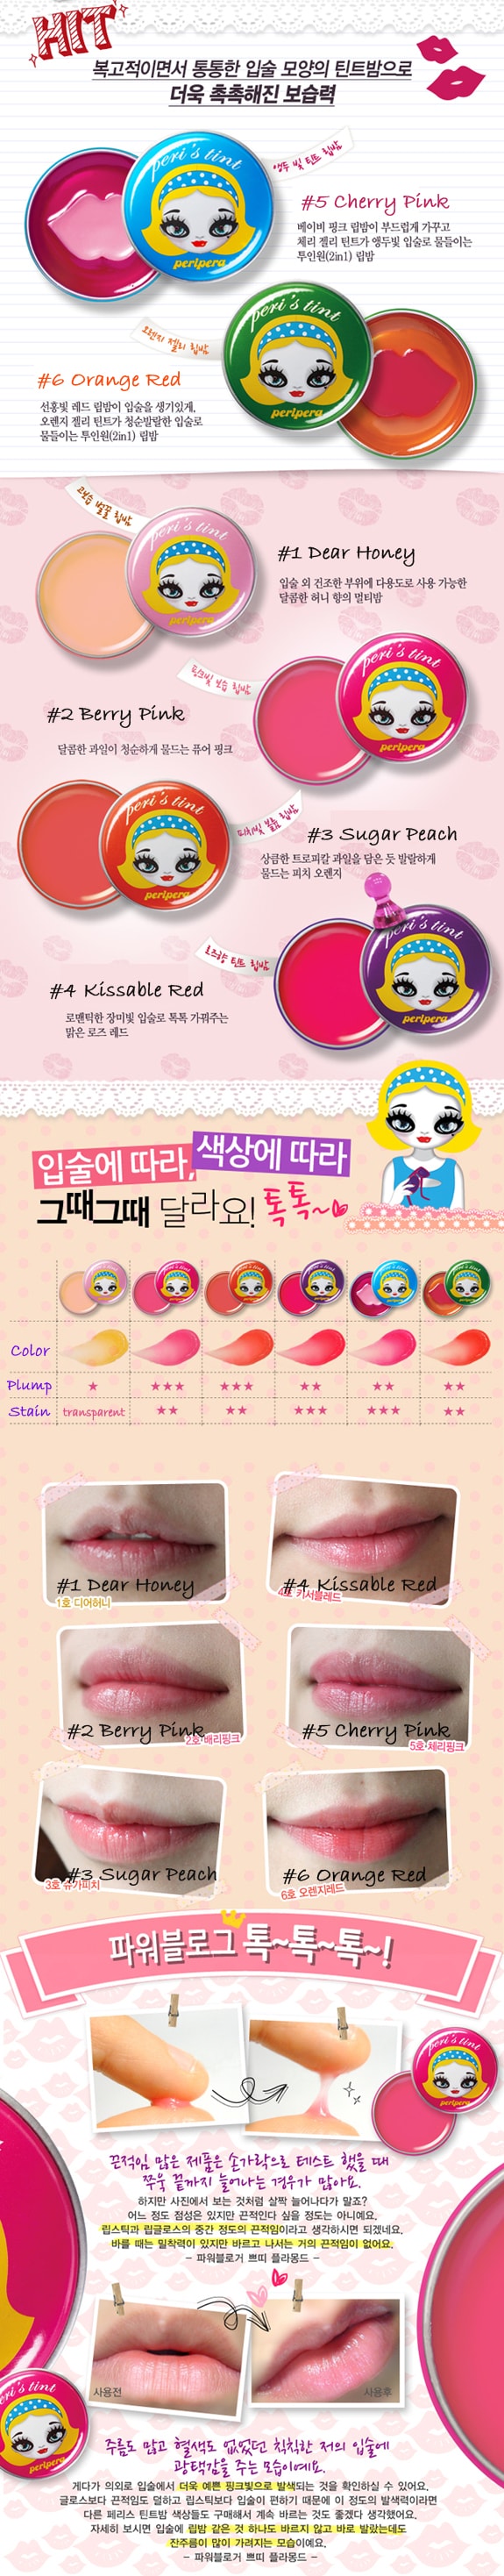 韓國 PERIPERA Peri's tint 護唇膏 #03 Sugar Peach 1pc